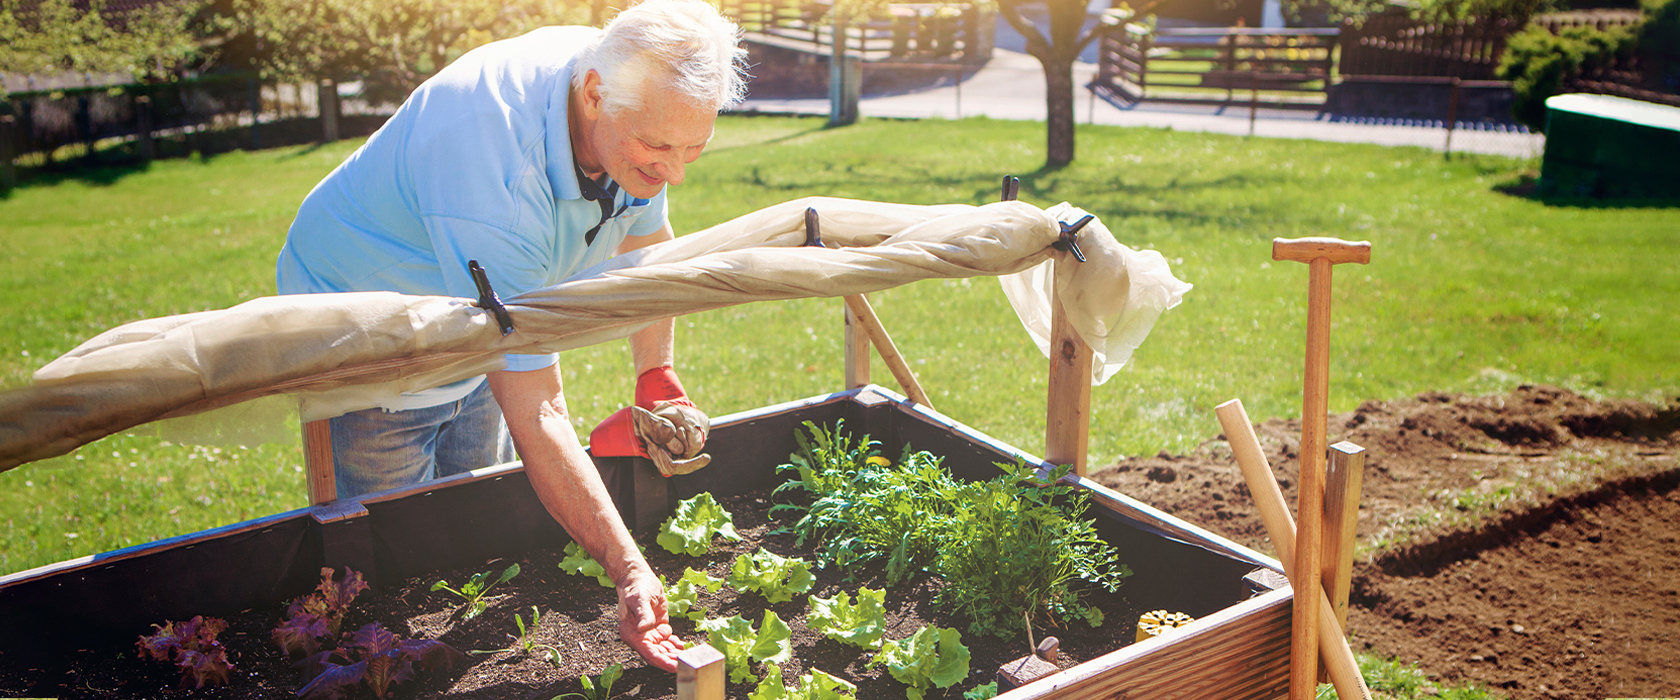 gardening tips for seniors getting started